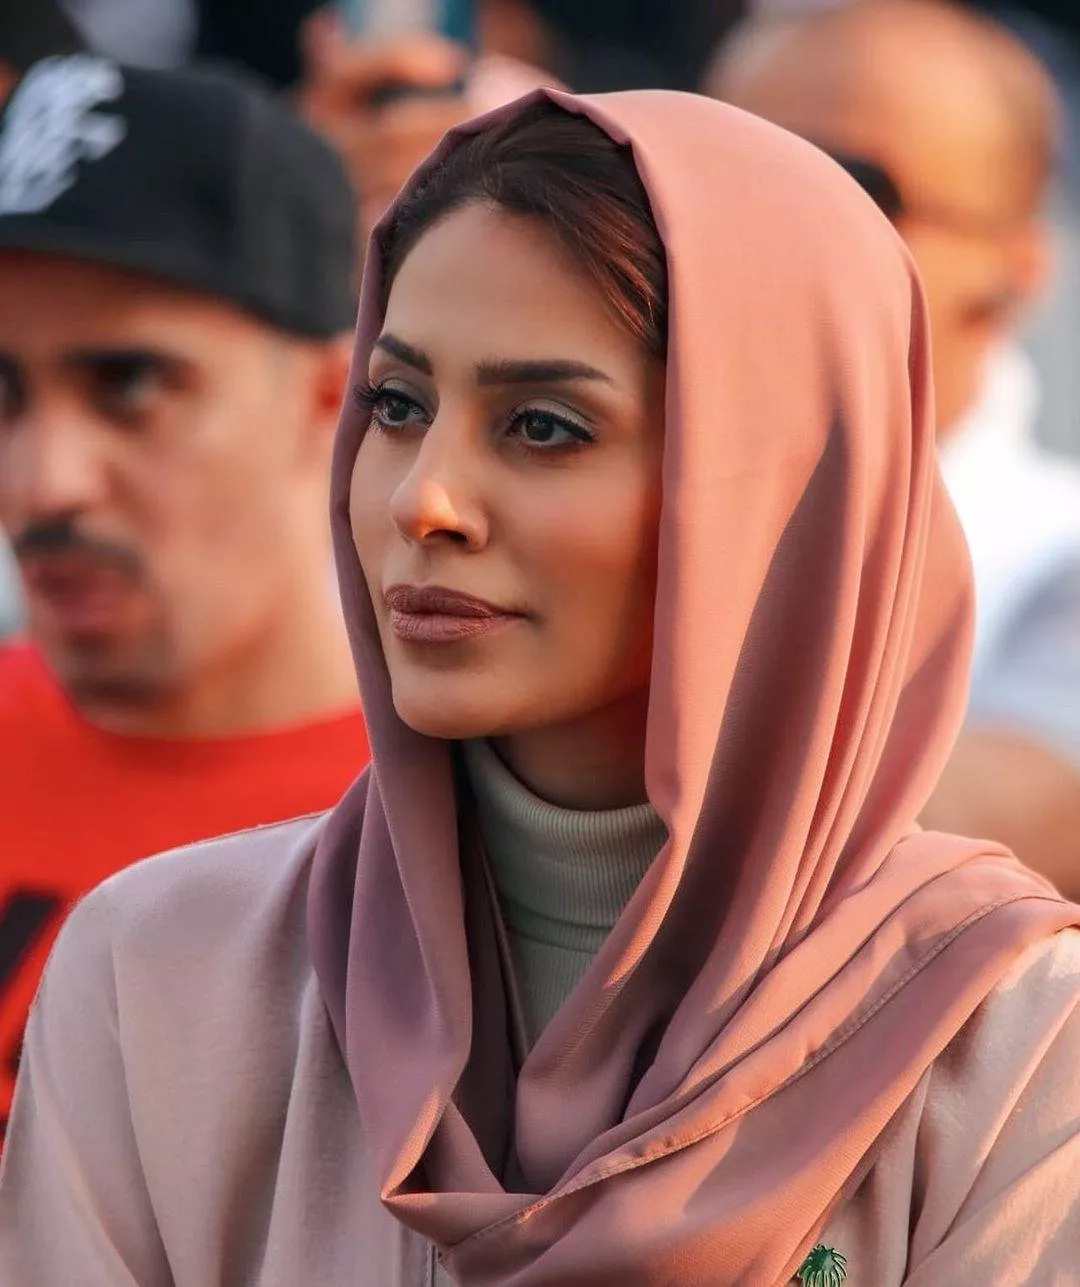 أكثر من 10 معلومات عن الممثلة السعودية إلهام علي